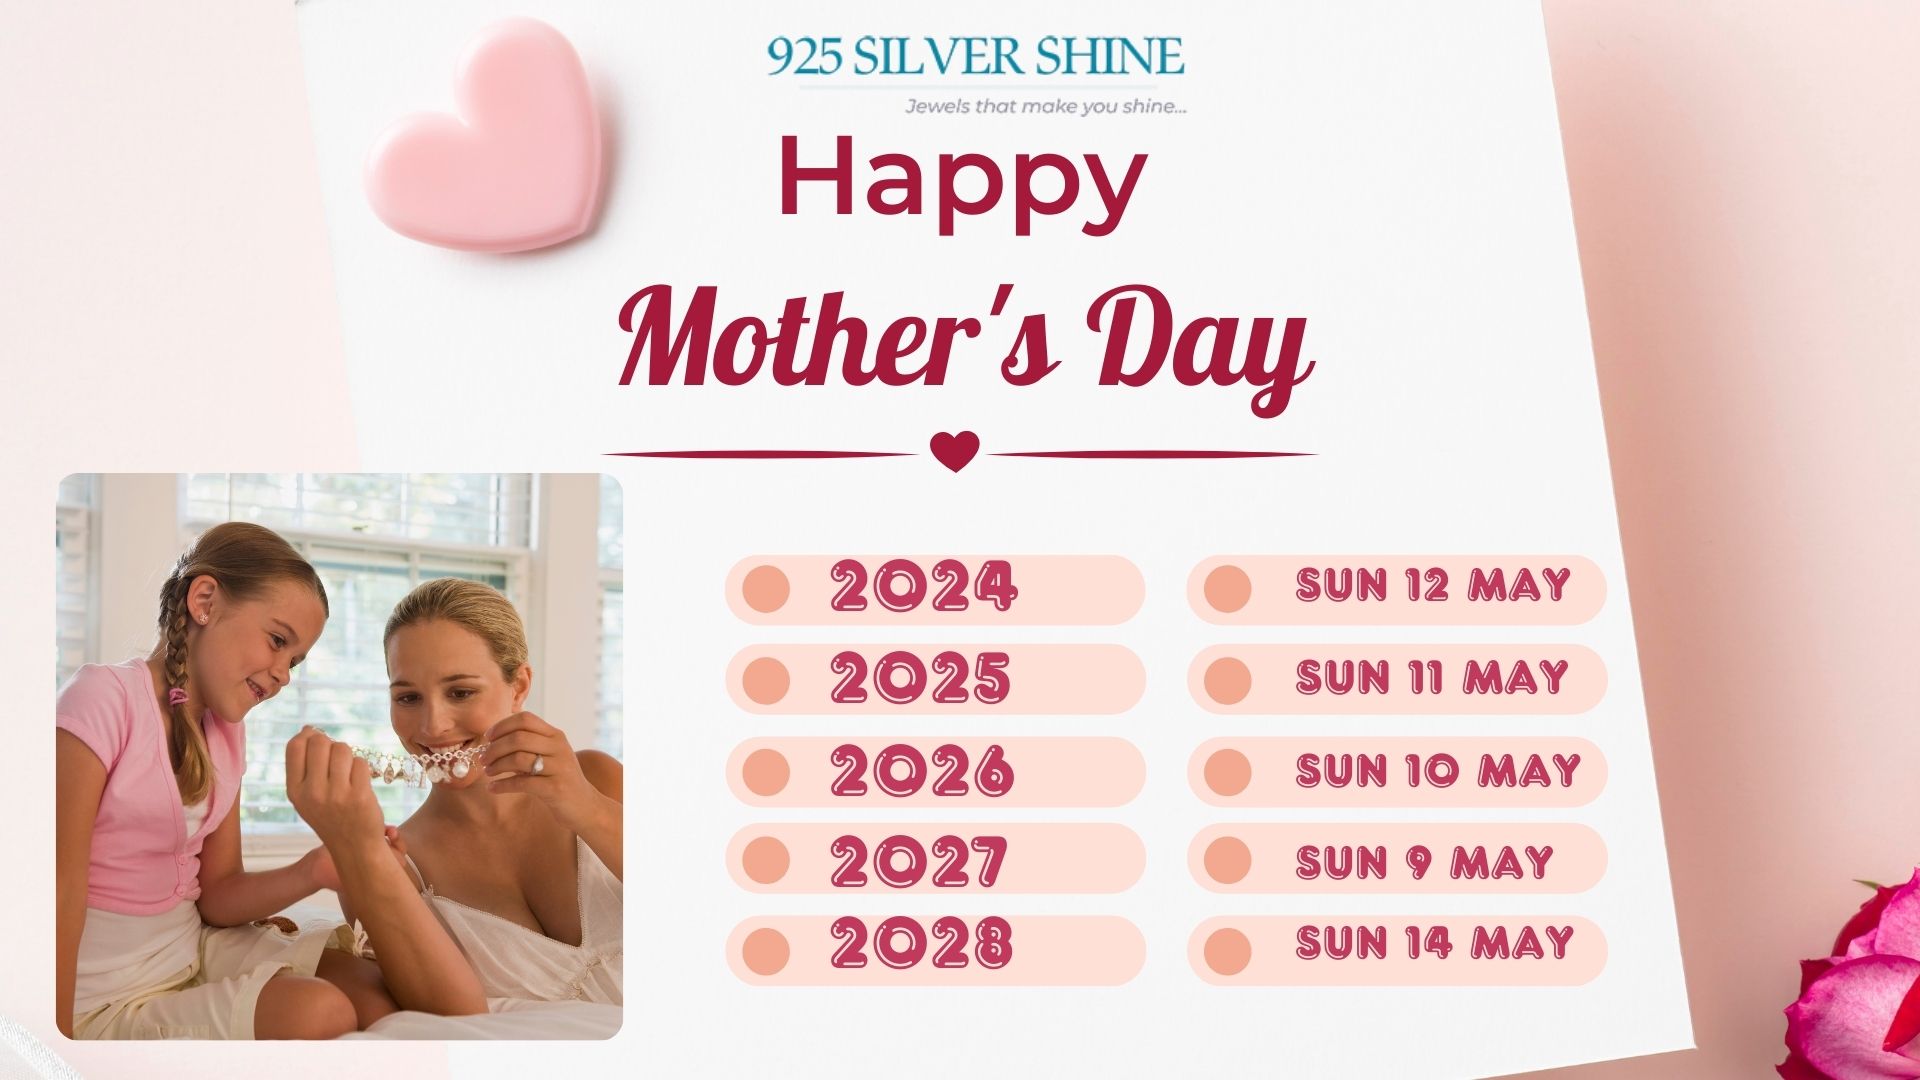 mother's day date, mother's day 2024, motherr's day 2025, motherr's day 2026, motherr's day 2027, motherr's day 2028